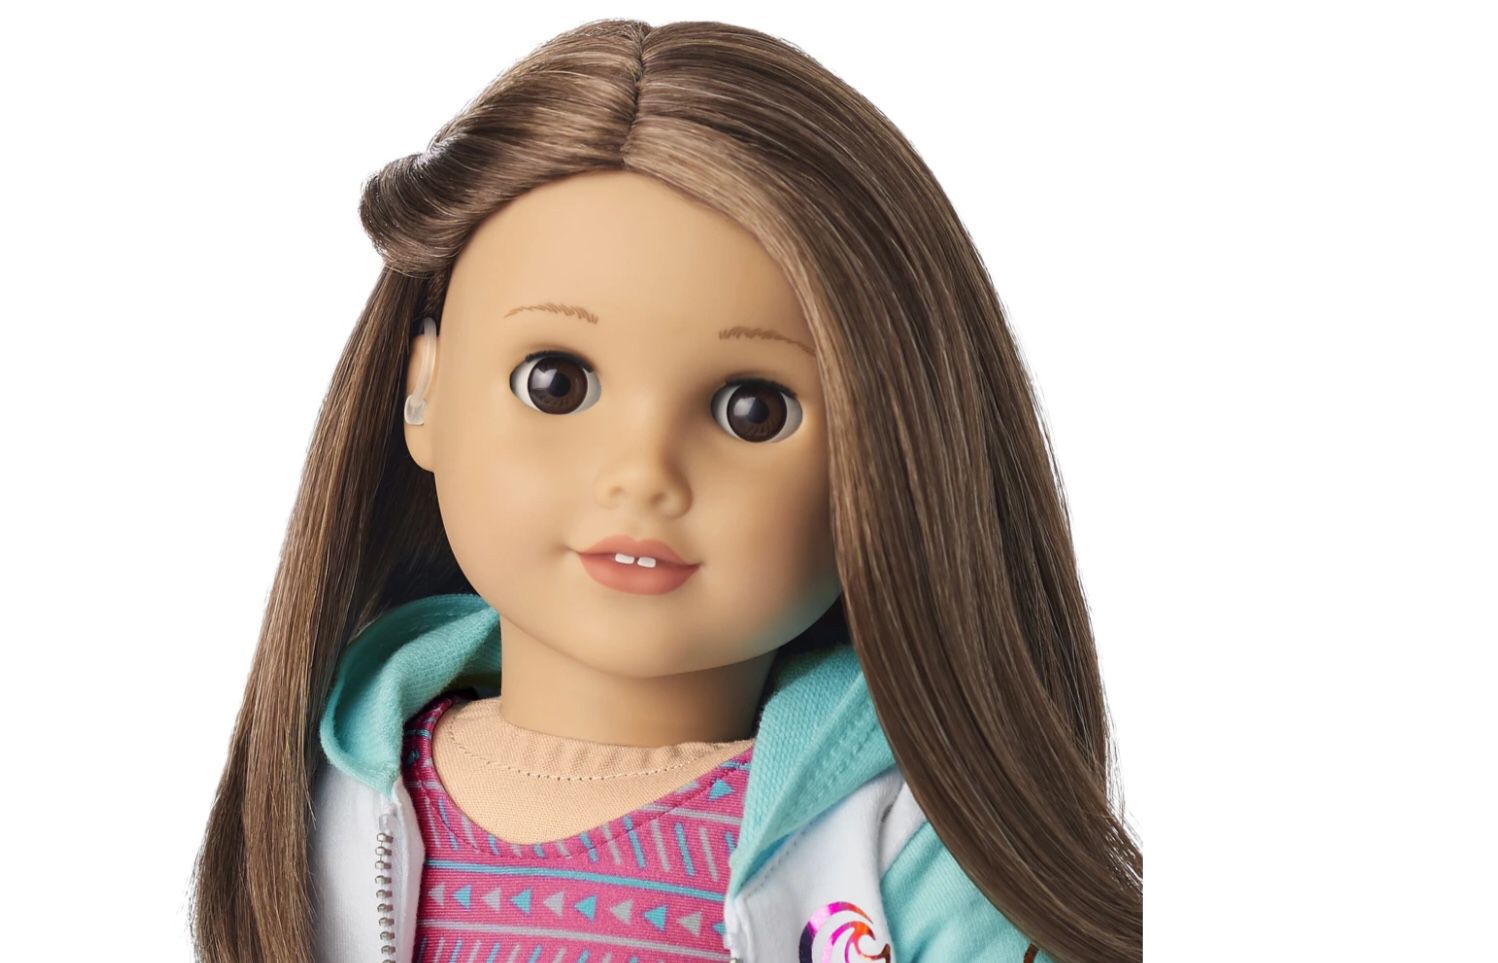 American Girl Doll Named Joss